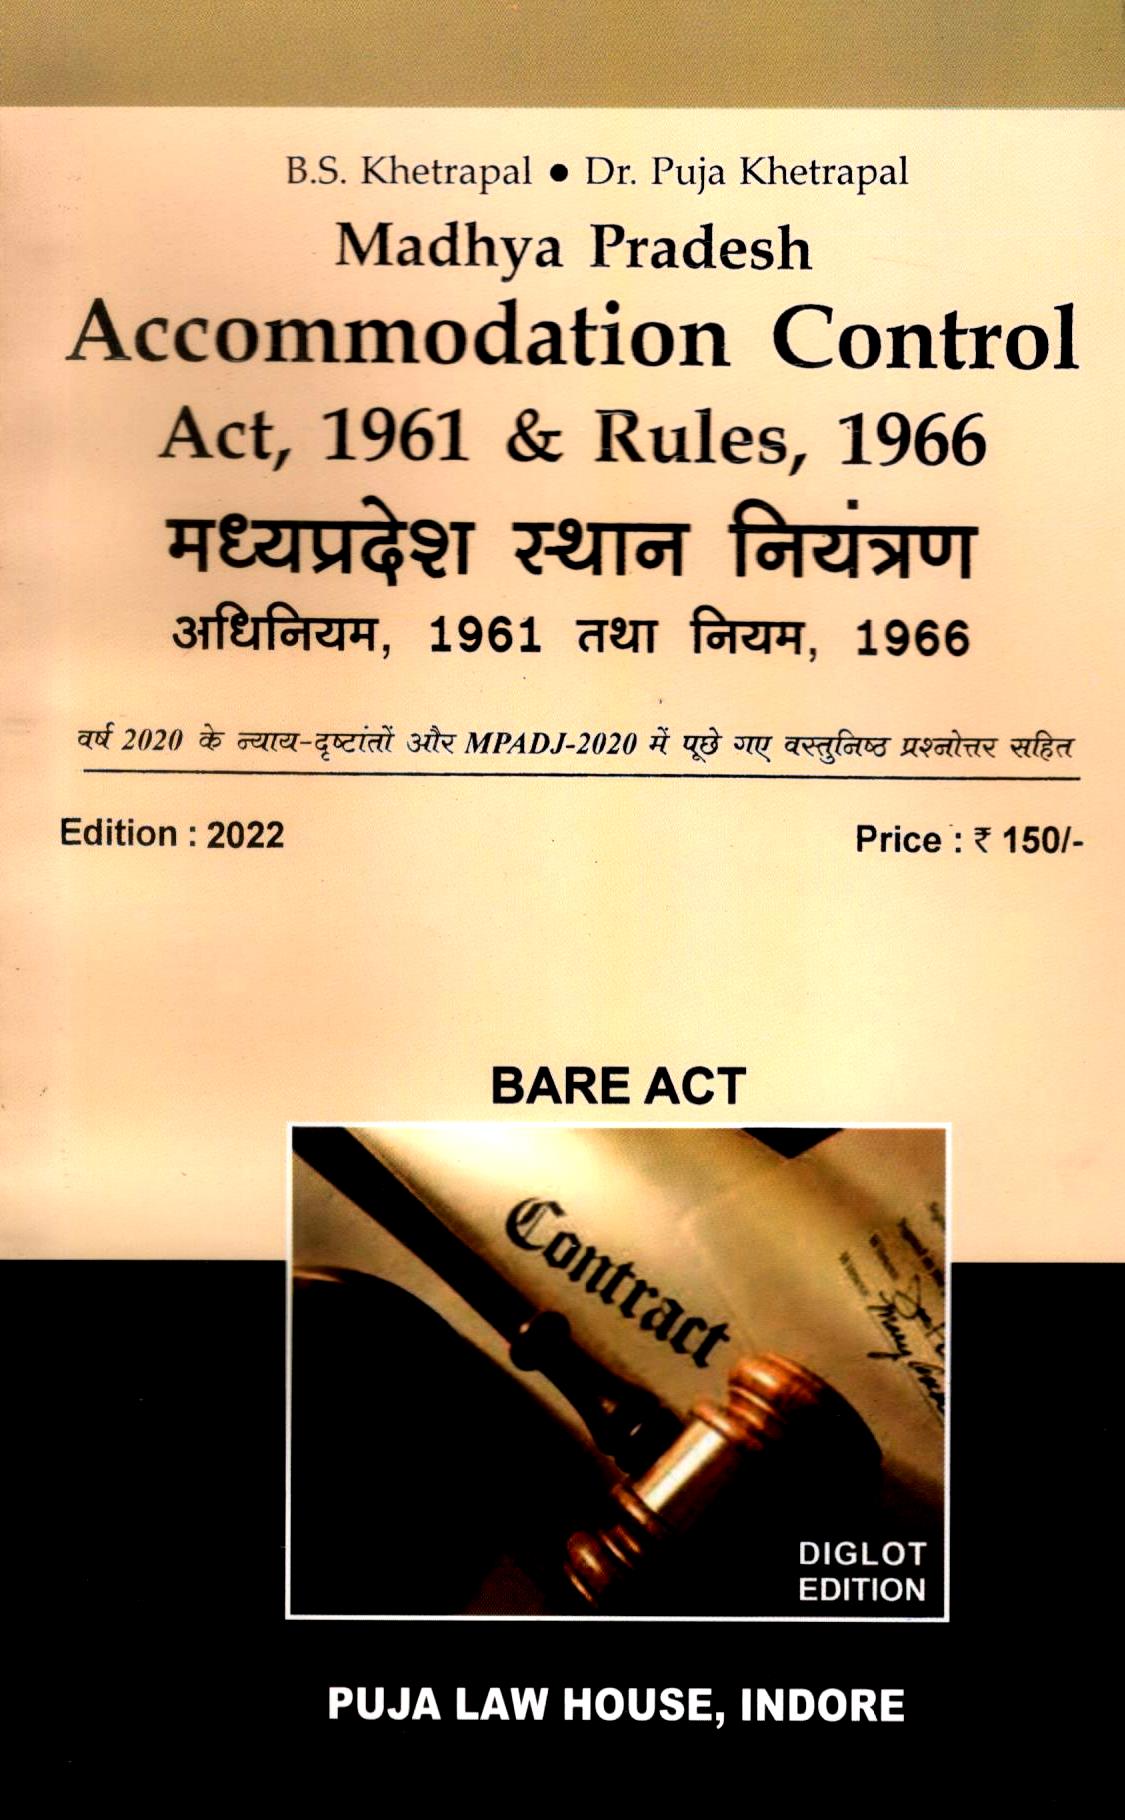  Buy मध्य प्रदेश स्थान नियंत्रण अधिनियम,1961 एवं नियम, 1966 / Madhya Pradesh Accommodation Control Act, 1961 & Rules, 1966 